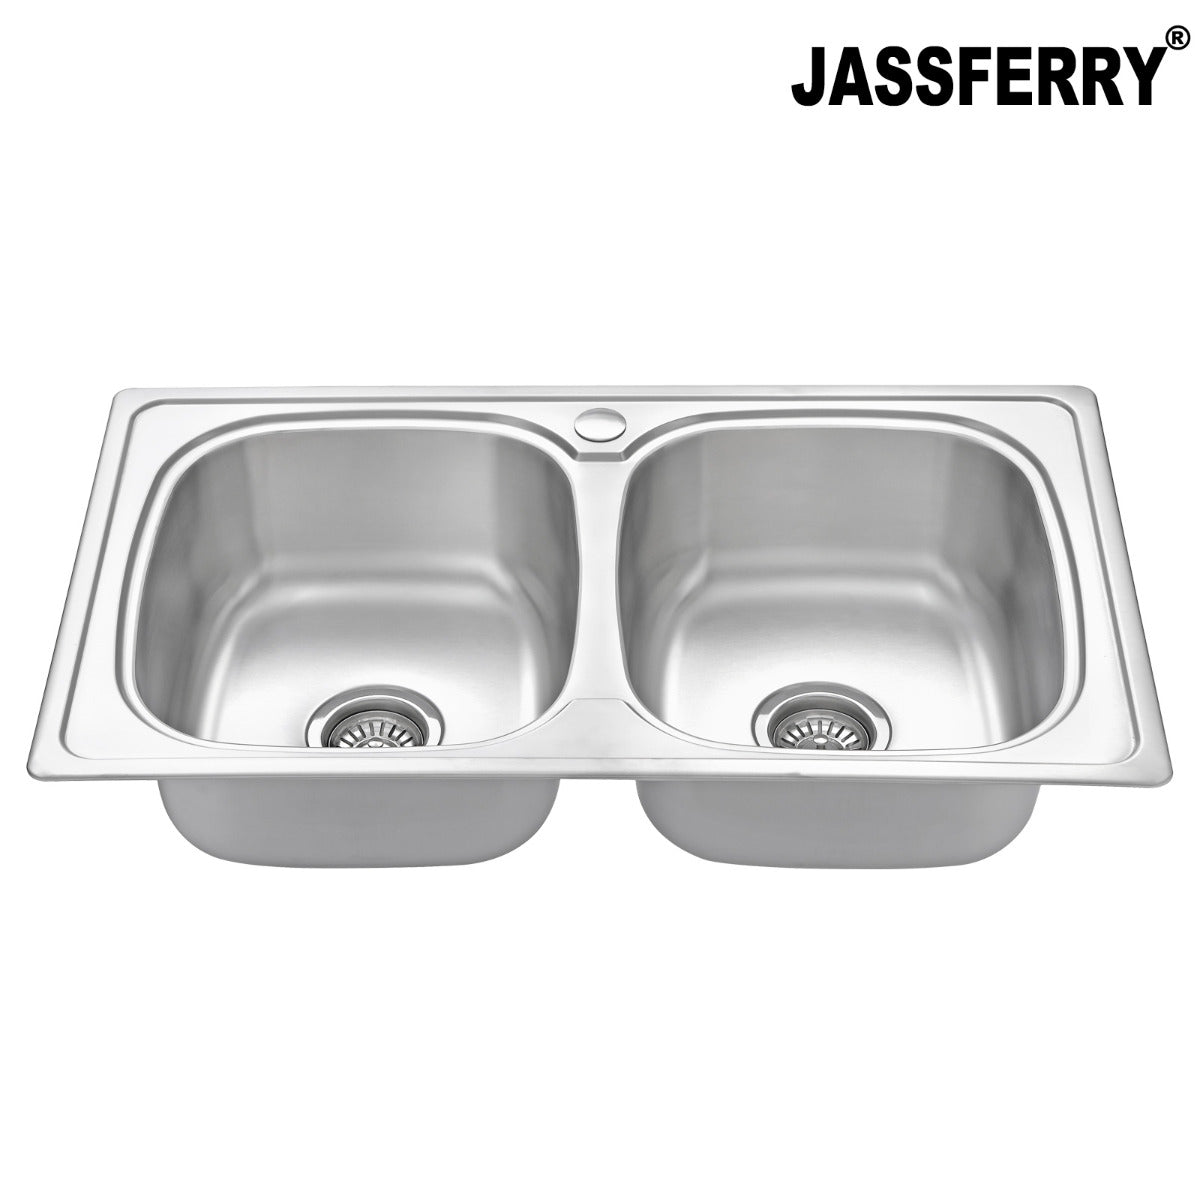 JassferryJASSFERRY Stainless Steel Kitchen Sink Inset 2 Double Bowl No DrainerKitchen Sinks